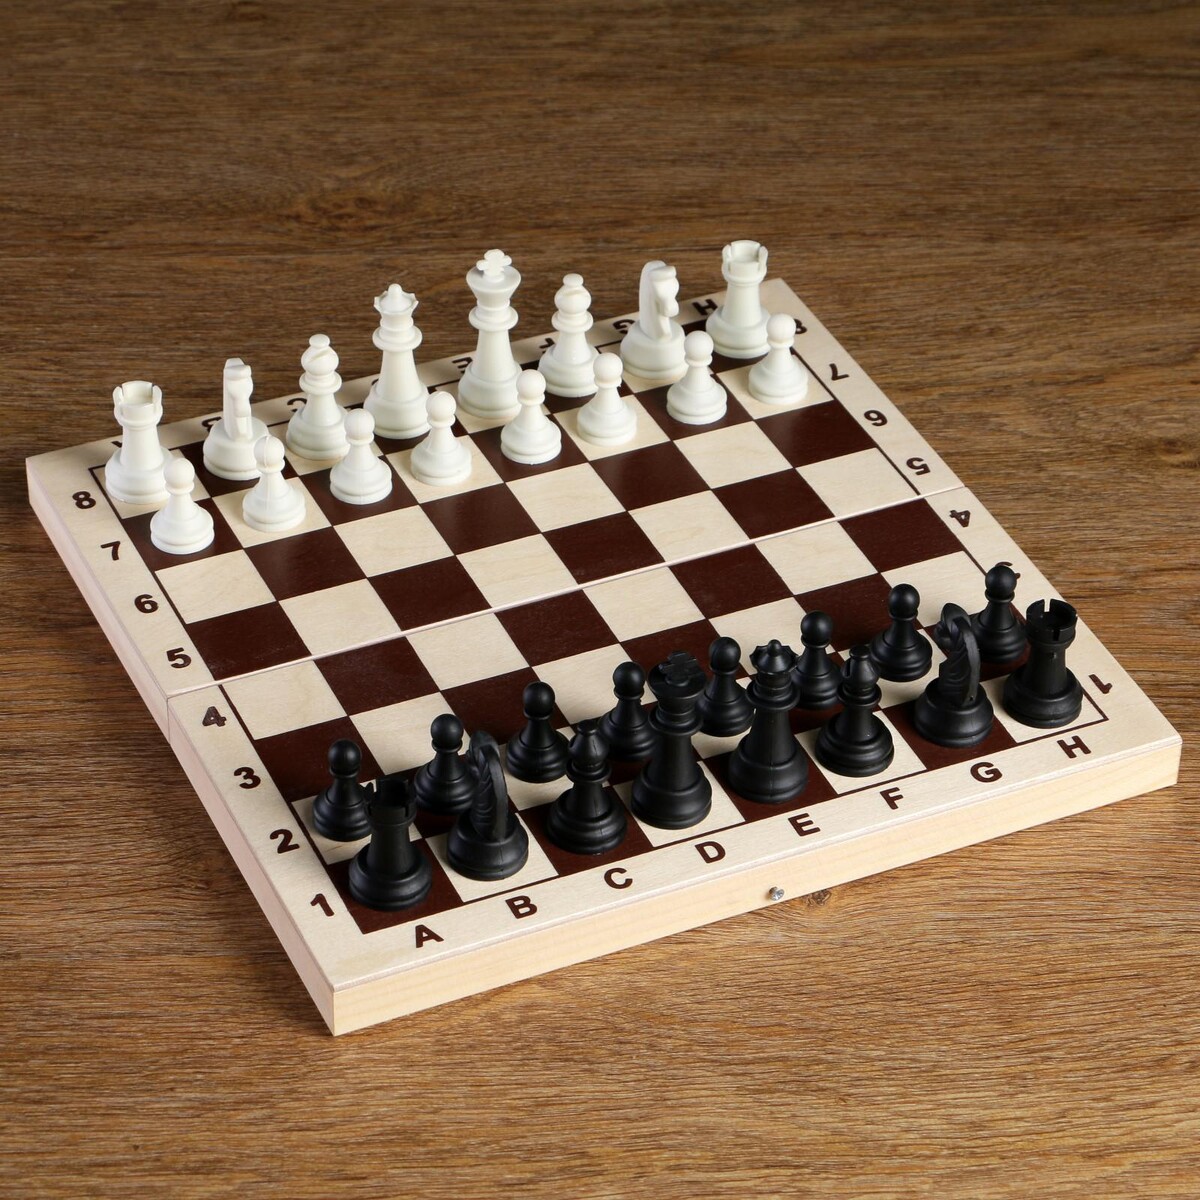 Шахматные фигуры, король h-6.2 см, пешка h-3.2 см, черно-белые глазки для творчества вращающиеся черно белые 12 мм 30 шт остров сокровищ 661326 20 шт